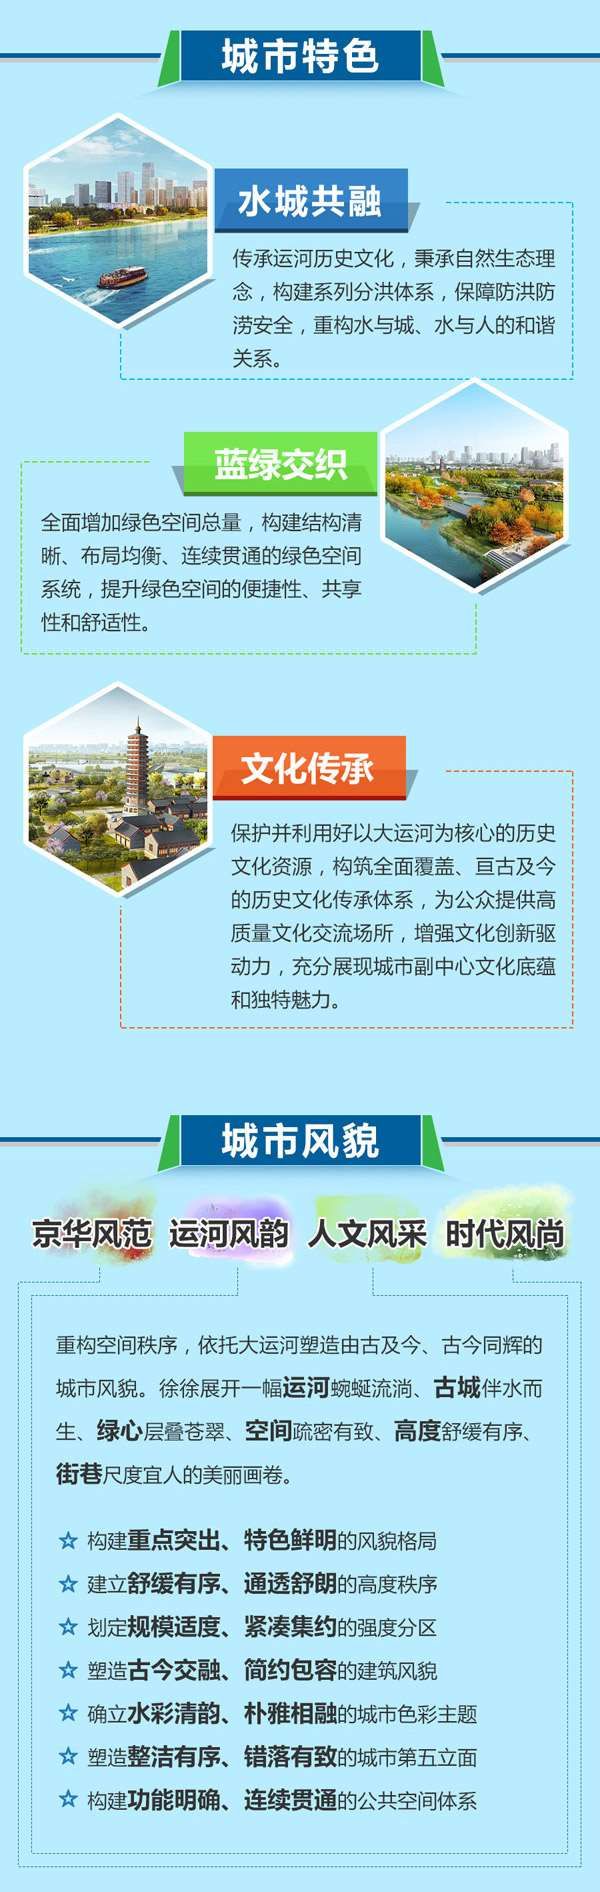 北京城市副中心有了设计图